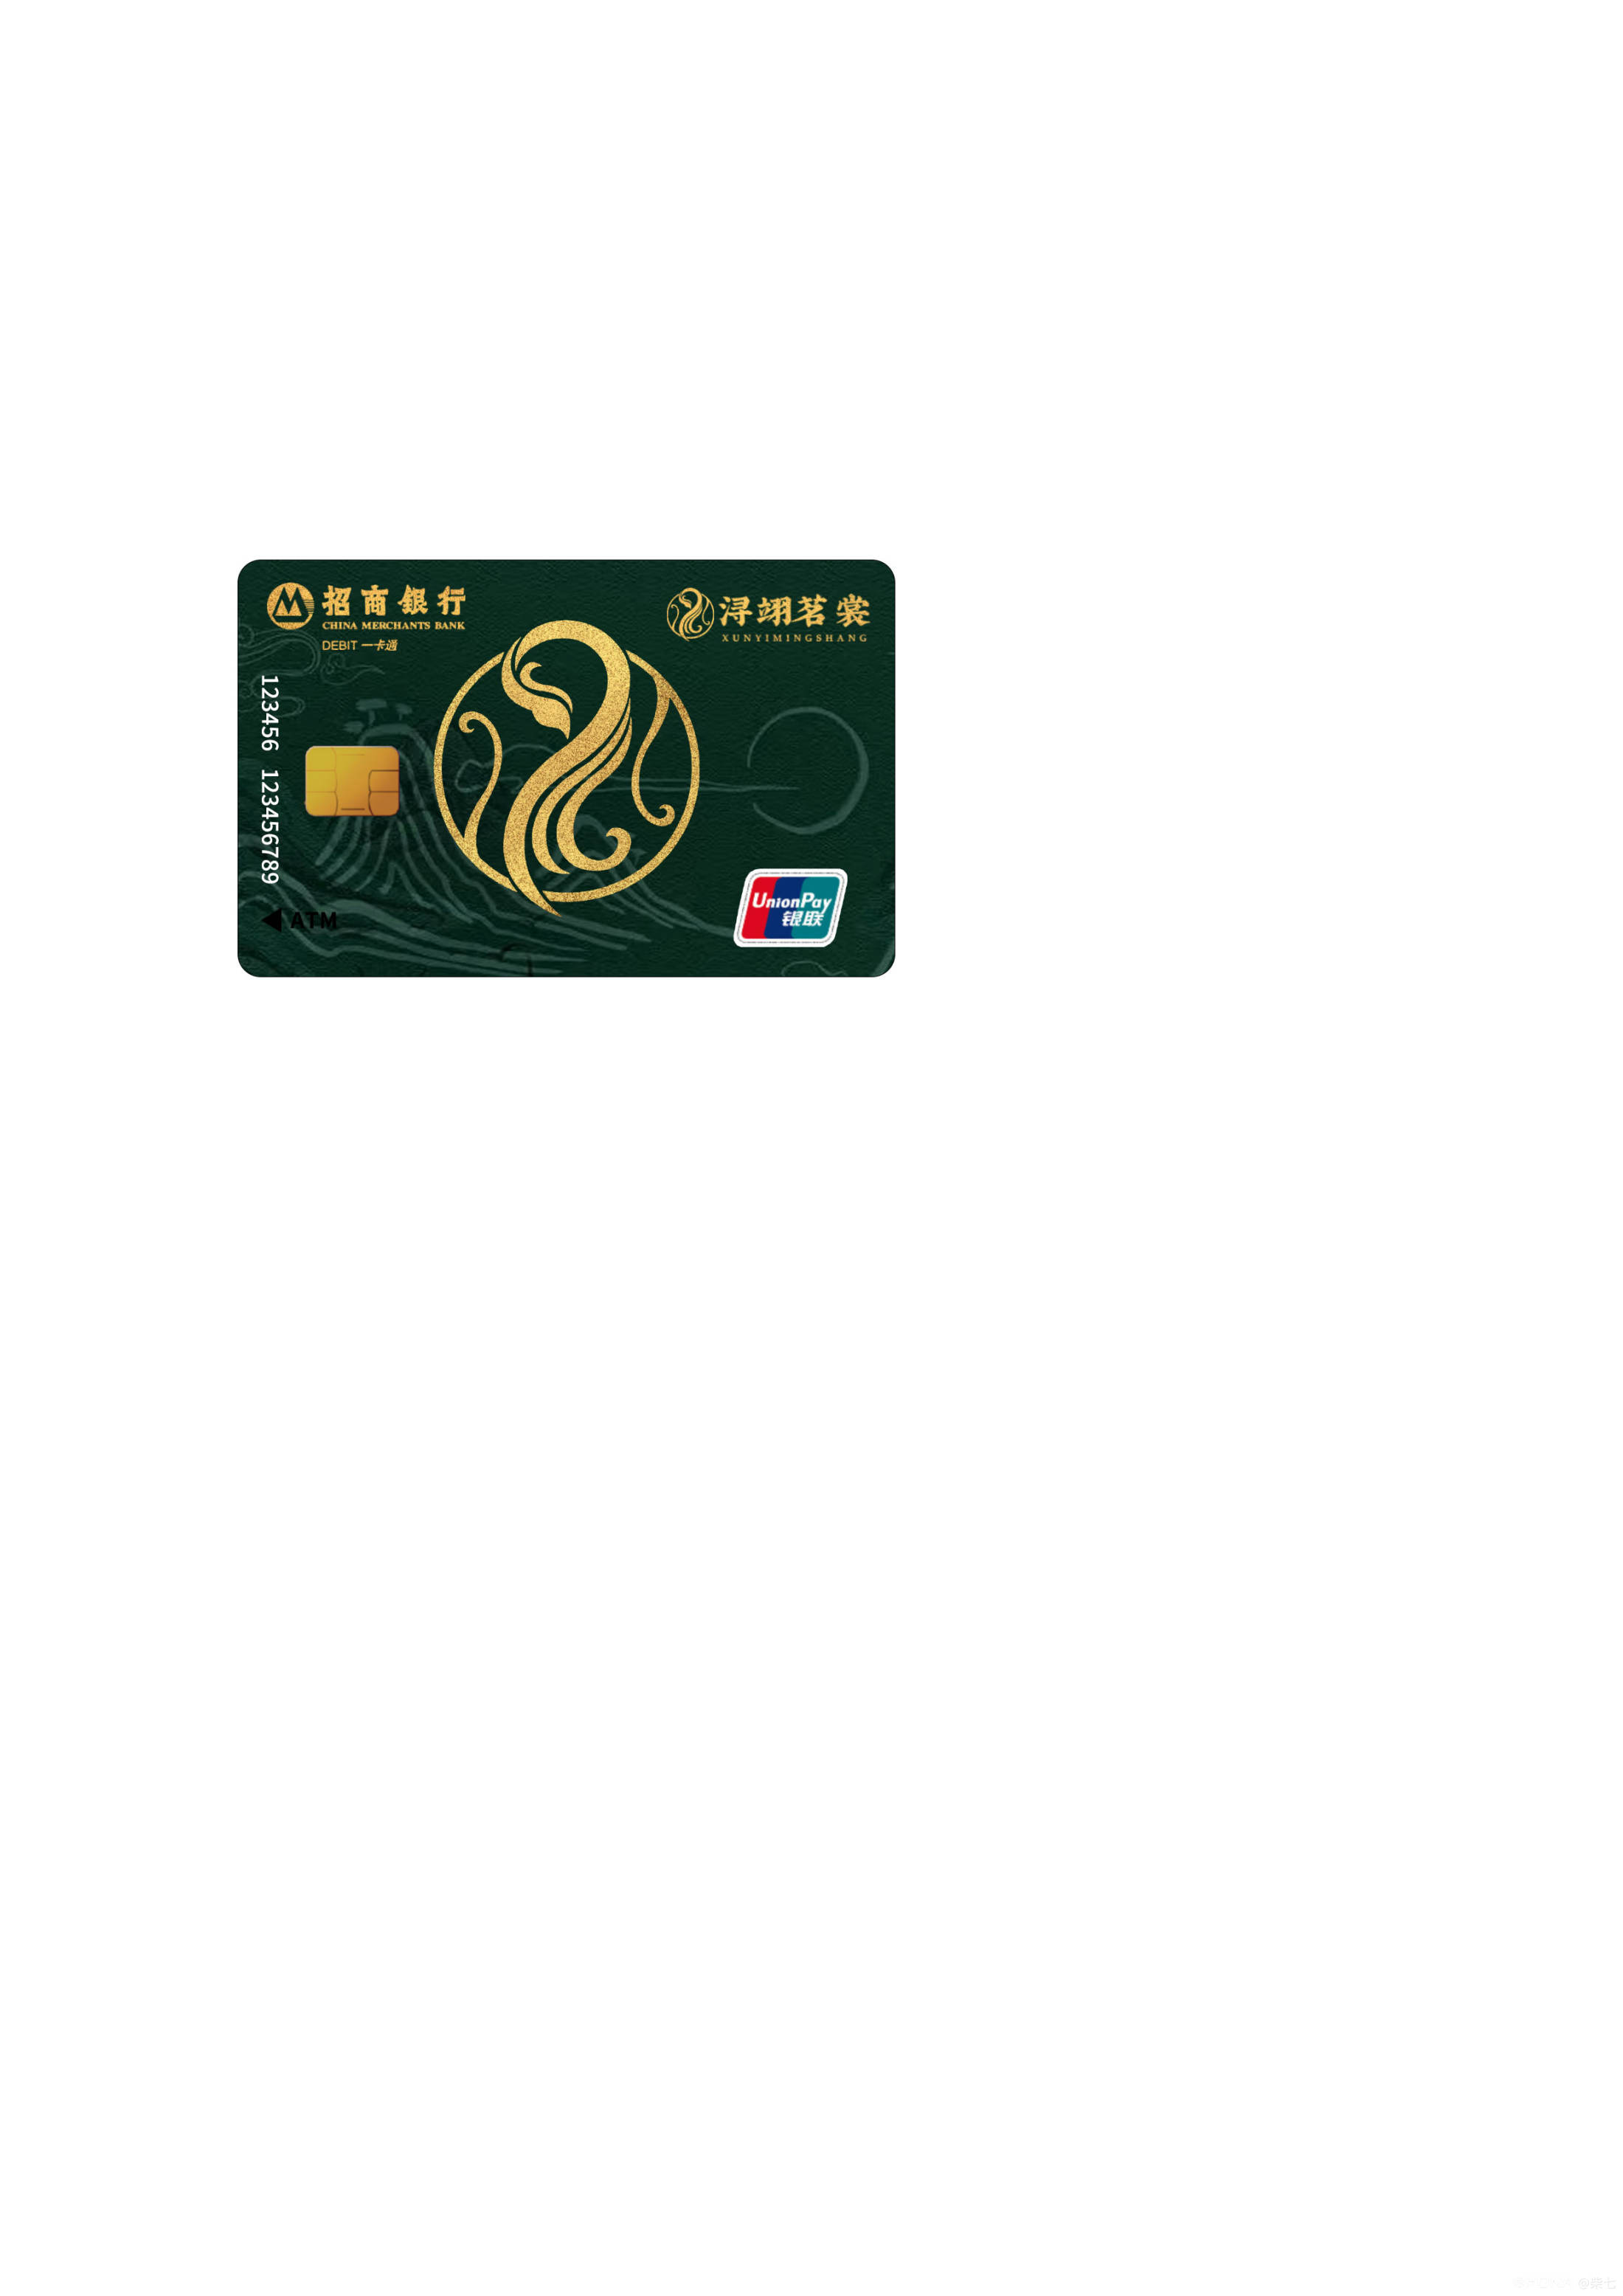 银行卡设计 图3